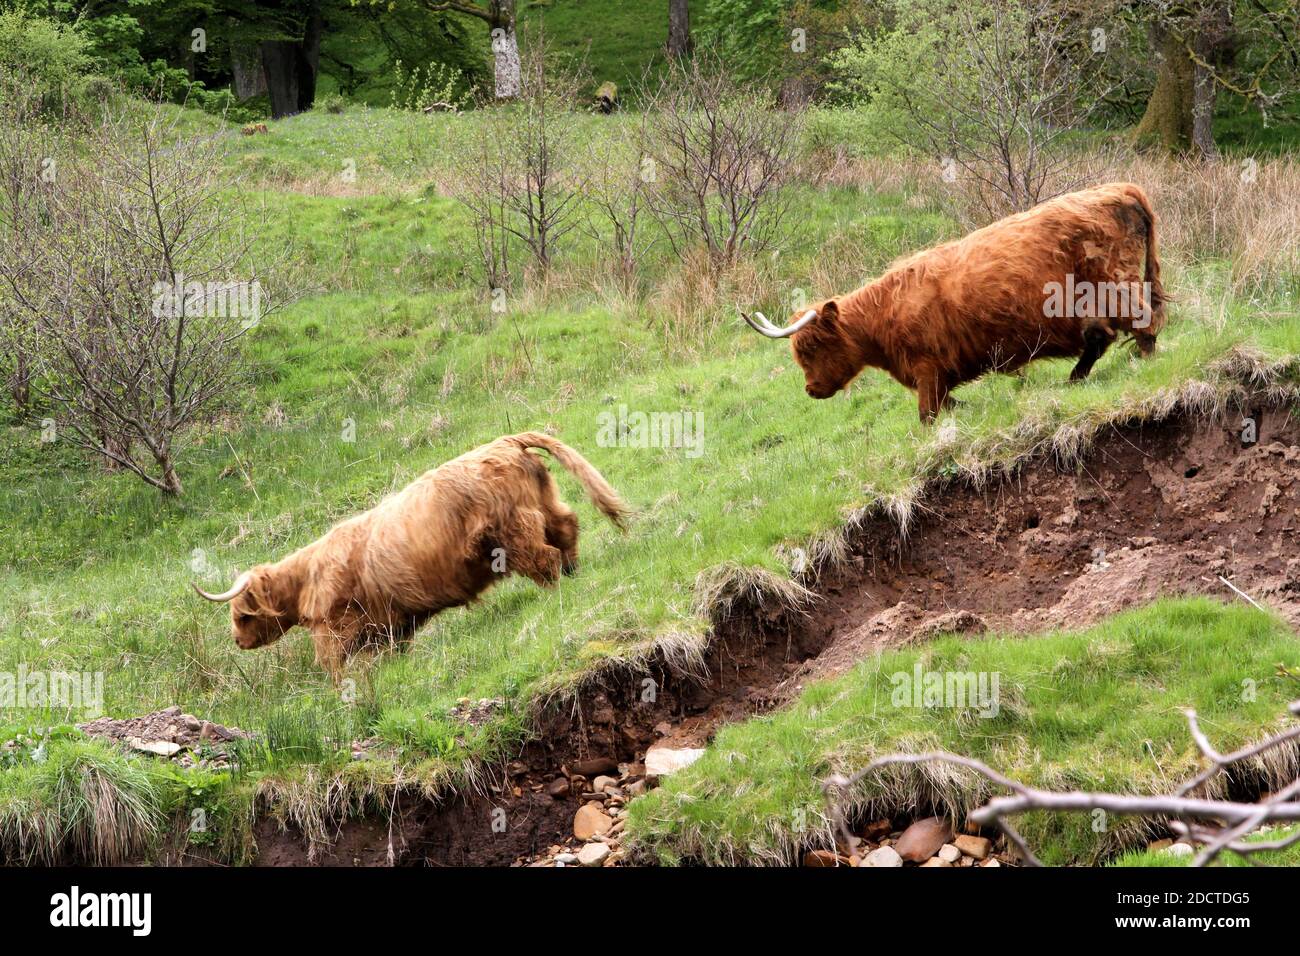 Mucche delle Highland : la Highland è una razza scozzese di bovini rustici. Ha avuto origine nelle Highlands scozzesi e nelle isole Ebridi esterne della Scozia e ha lunghe corna e un lungo stemma. È una razza dura, allevata per resistere alle condizioni intemperate nella regione. Foto Stock